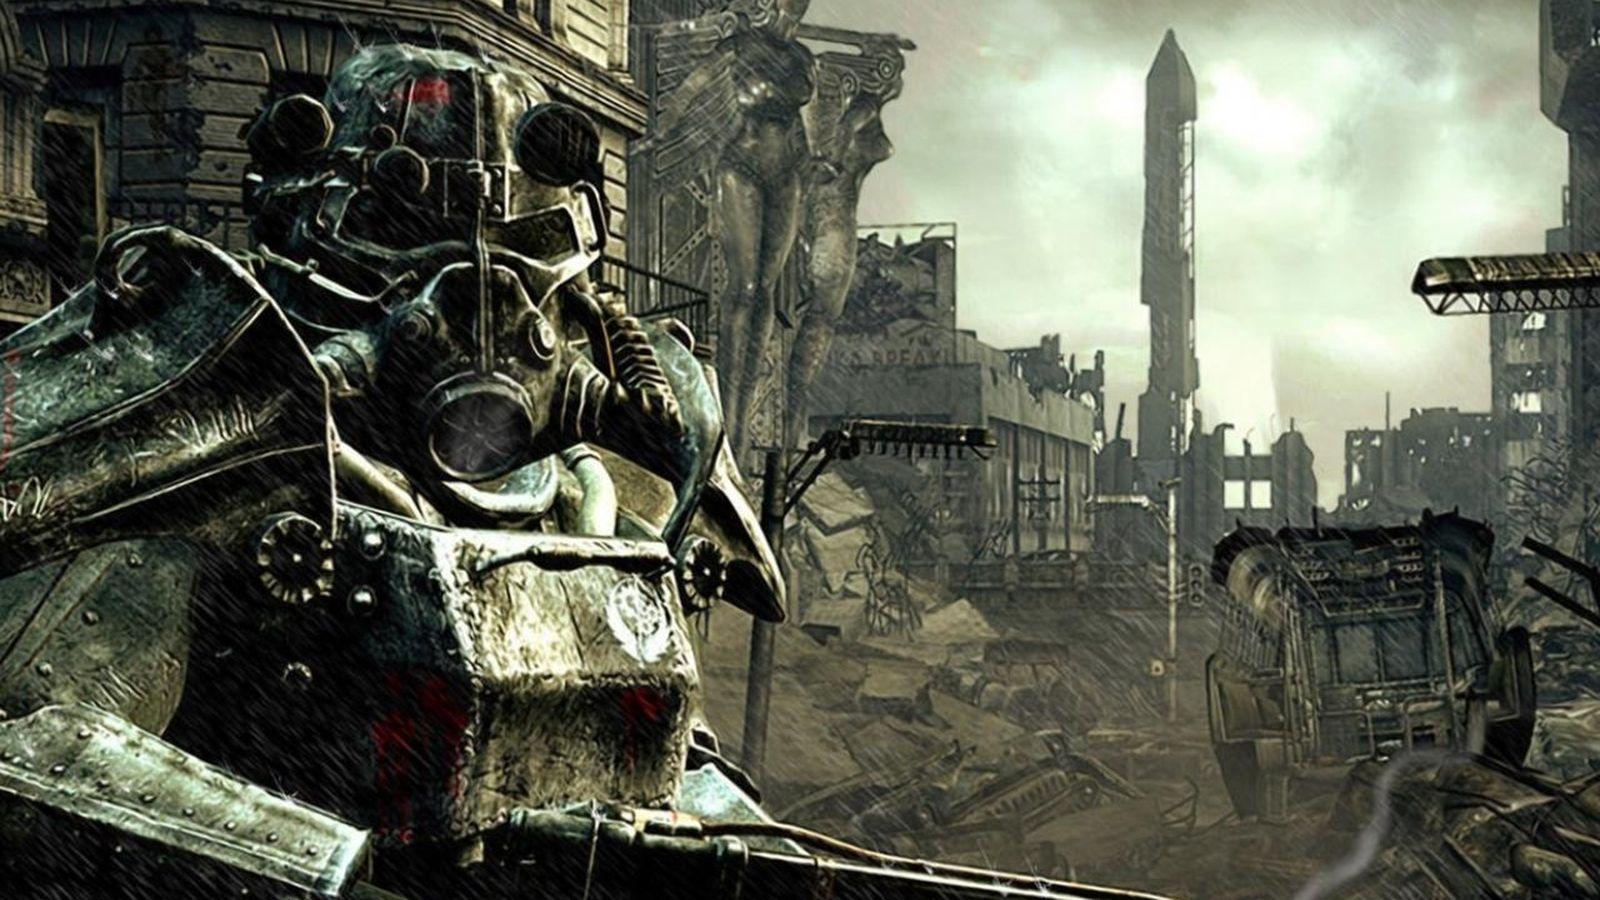 Fallout: уроки выживания по мотивам игры